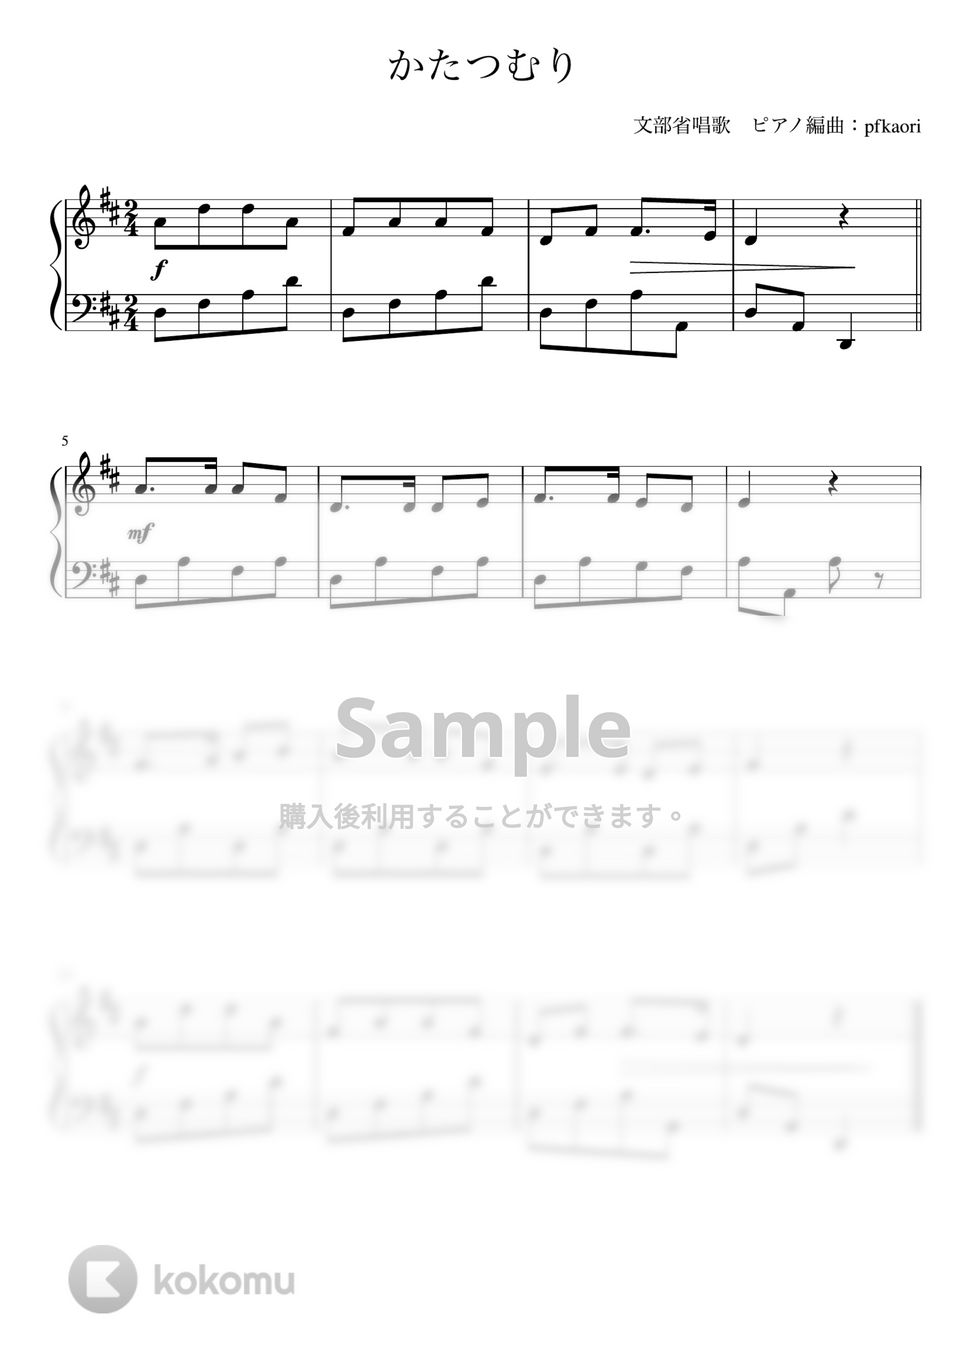 かたつむり (Ddur/ピアノソロ初級) by pfkaori